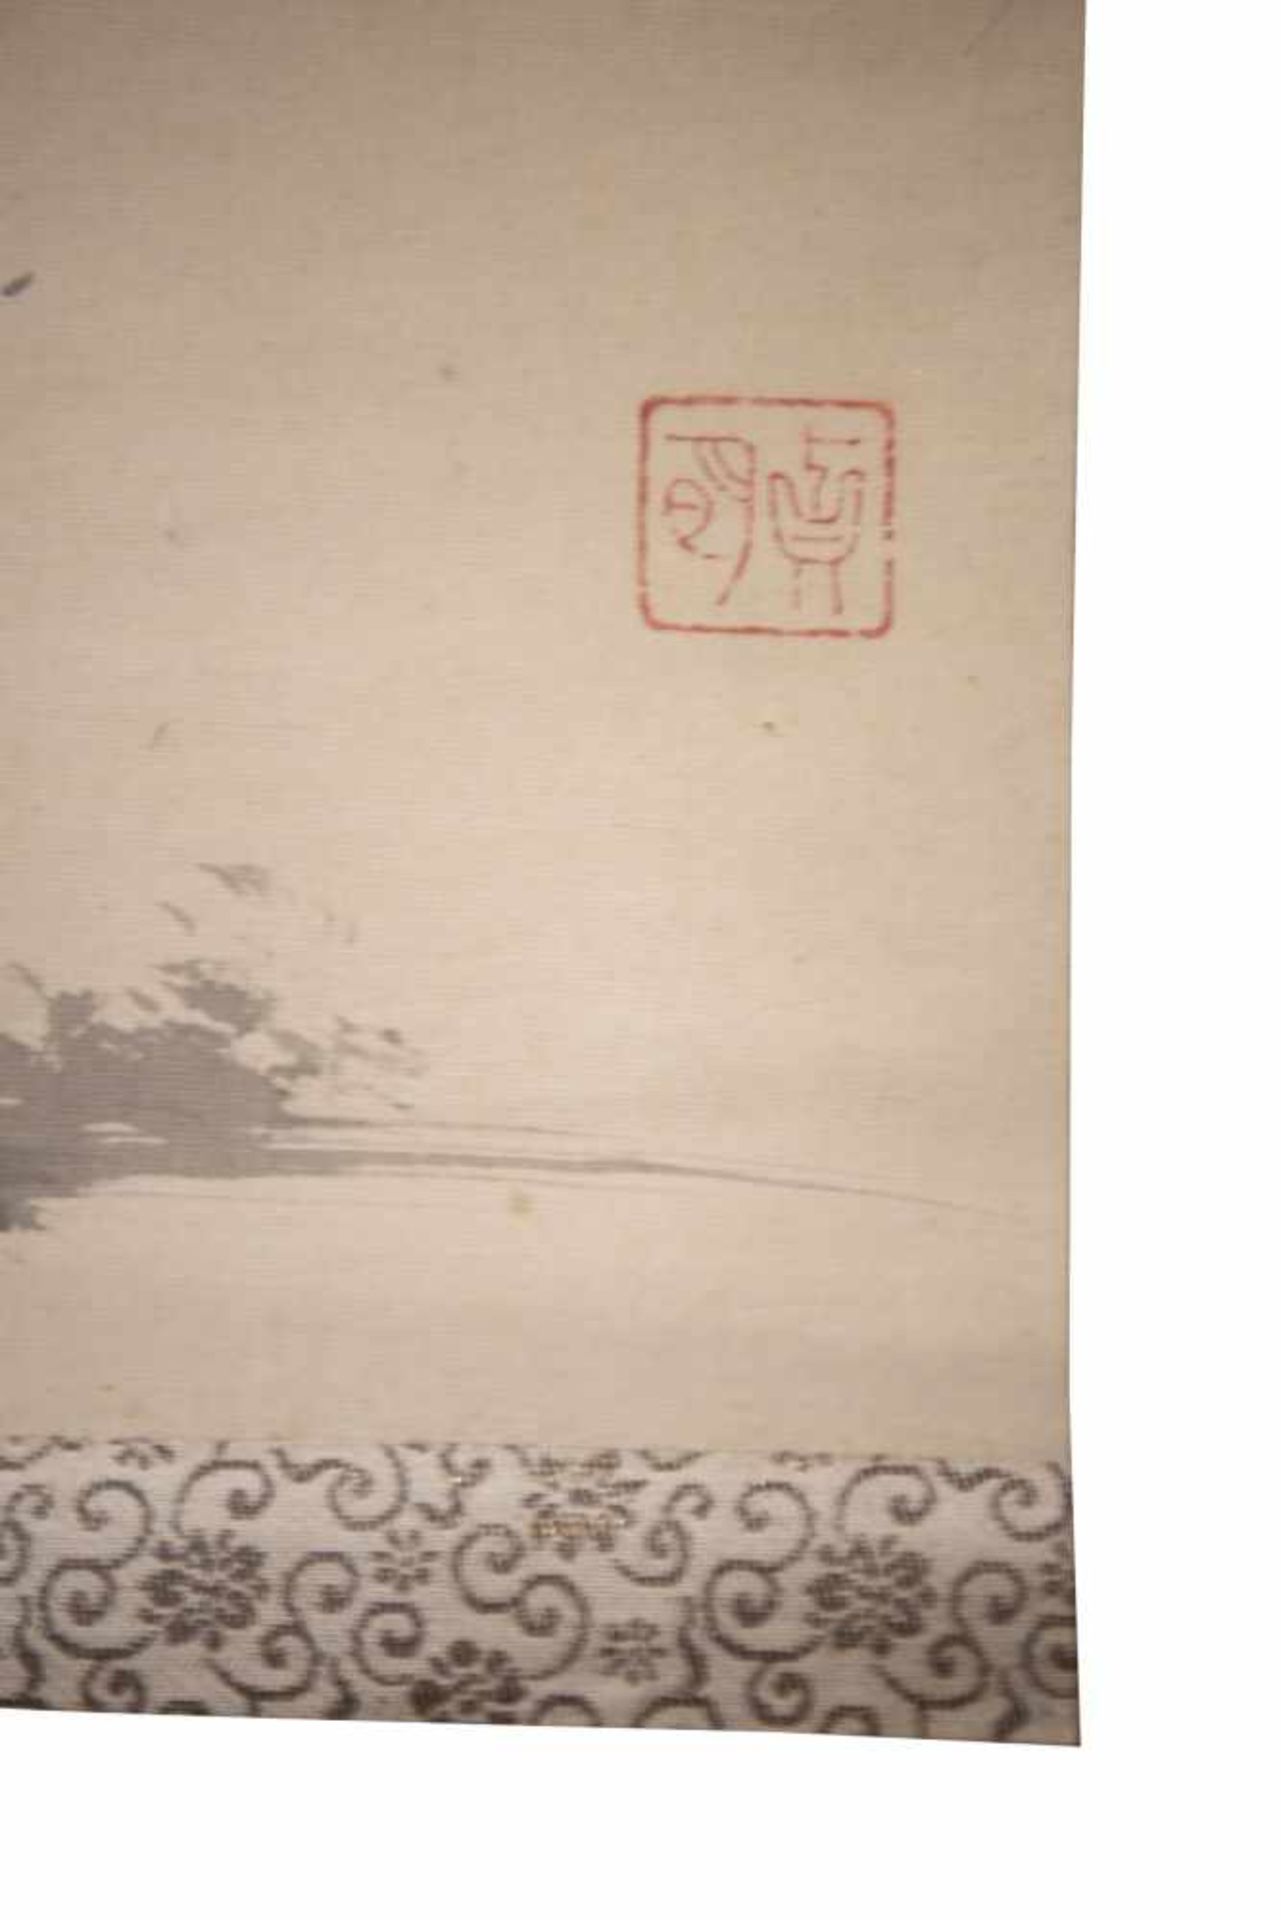 Chinesische HängerolleTusche auf Seide. Hier wird eine chinesische Landschaft dargestellt. - Bild 2 aus 3